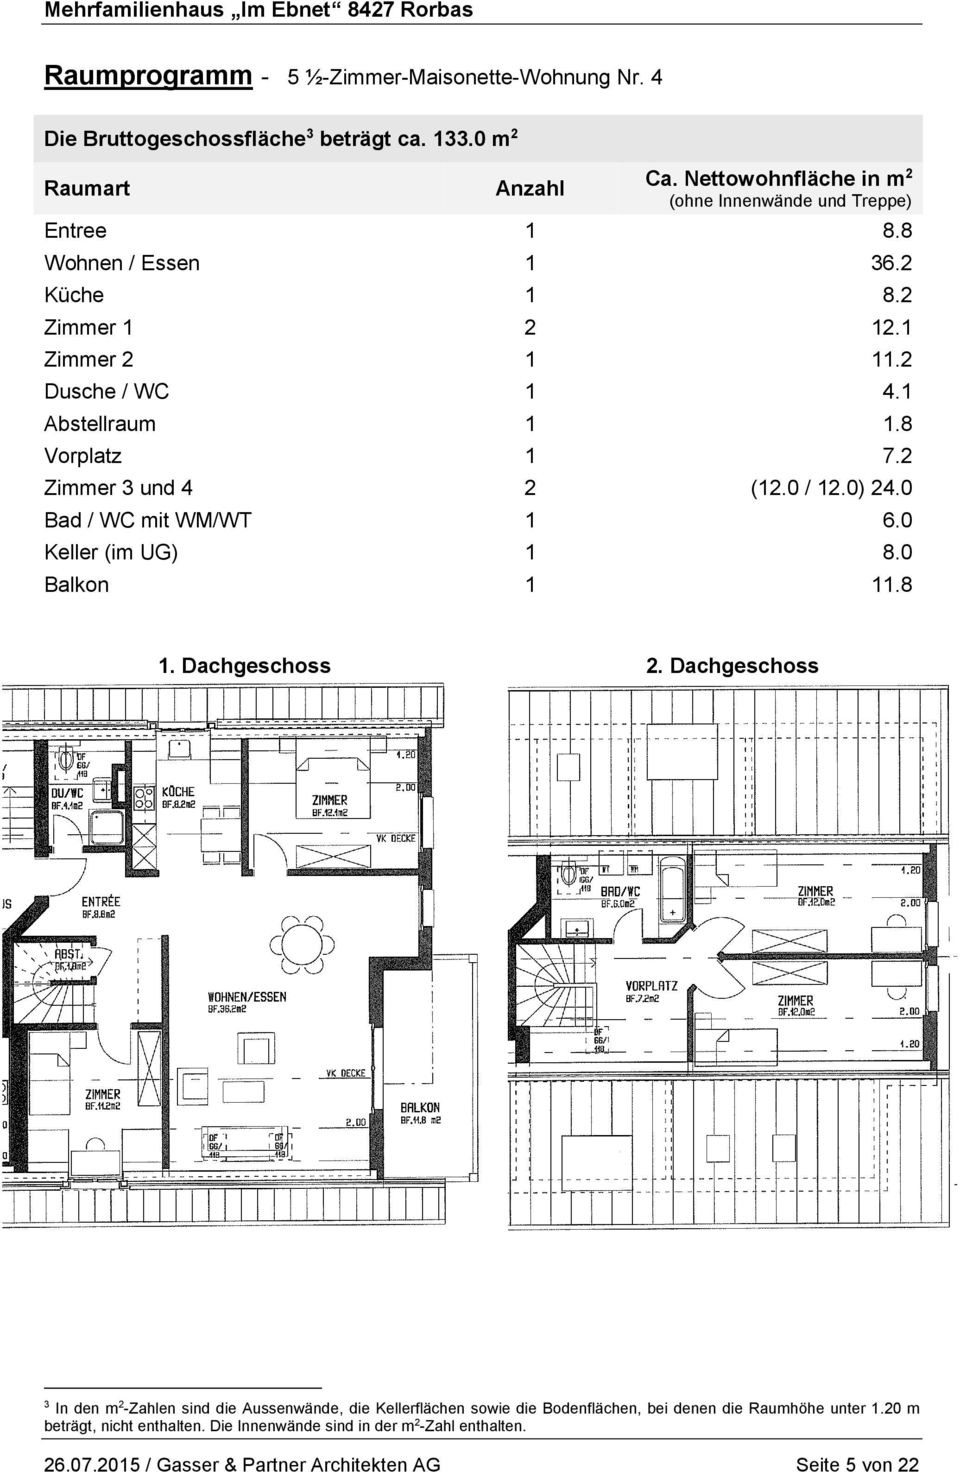 8 Vorplatz 1 7.2 Zimmer 3 und 4 2 (12.0 / 12.0) 24.0 Bad / WC mit WM/WT 1 6.0 Keller (im UG) 1 8.0 Balkon 1 11.8 1. Dachgeschoss 2.